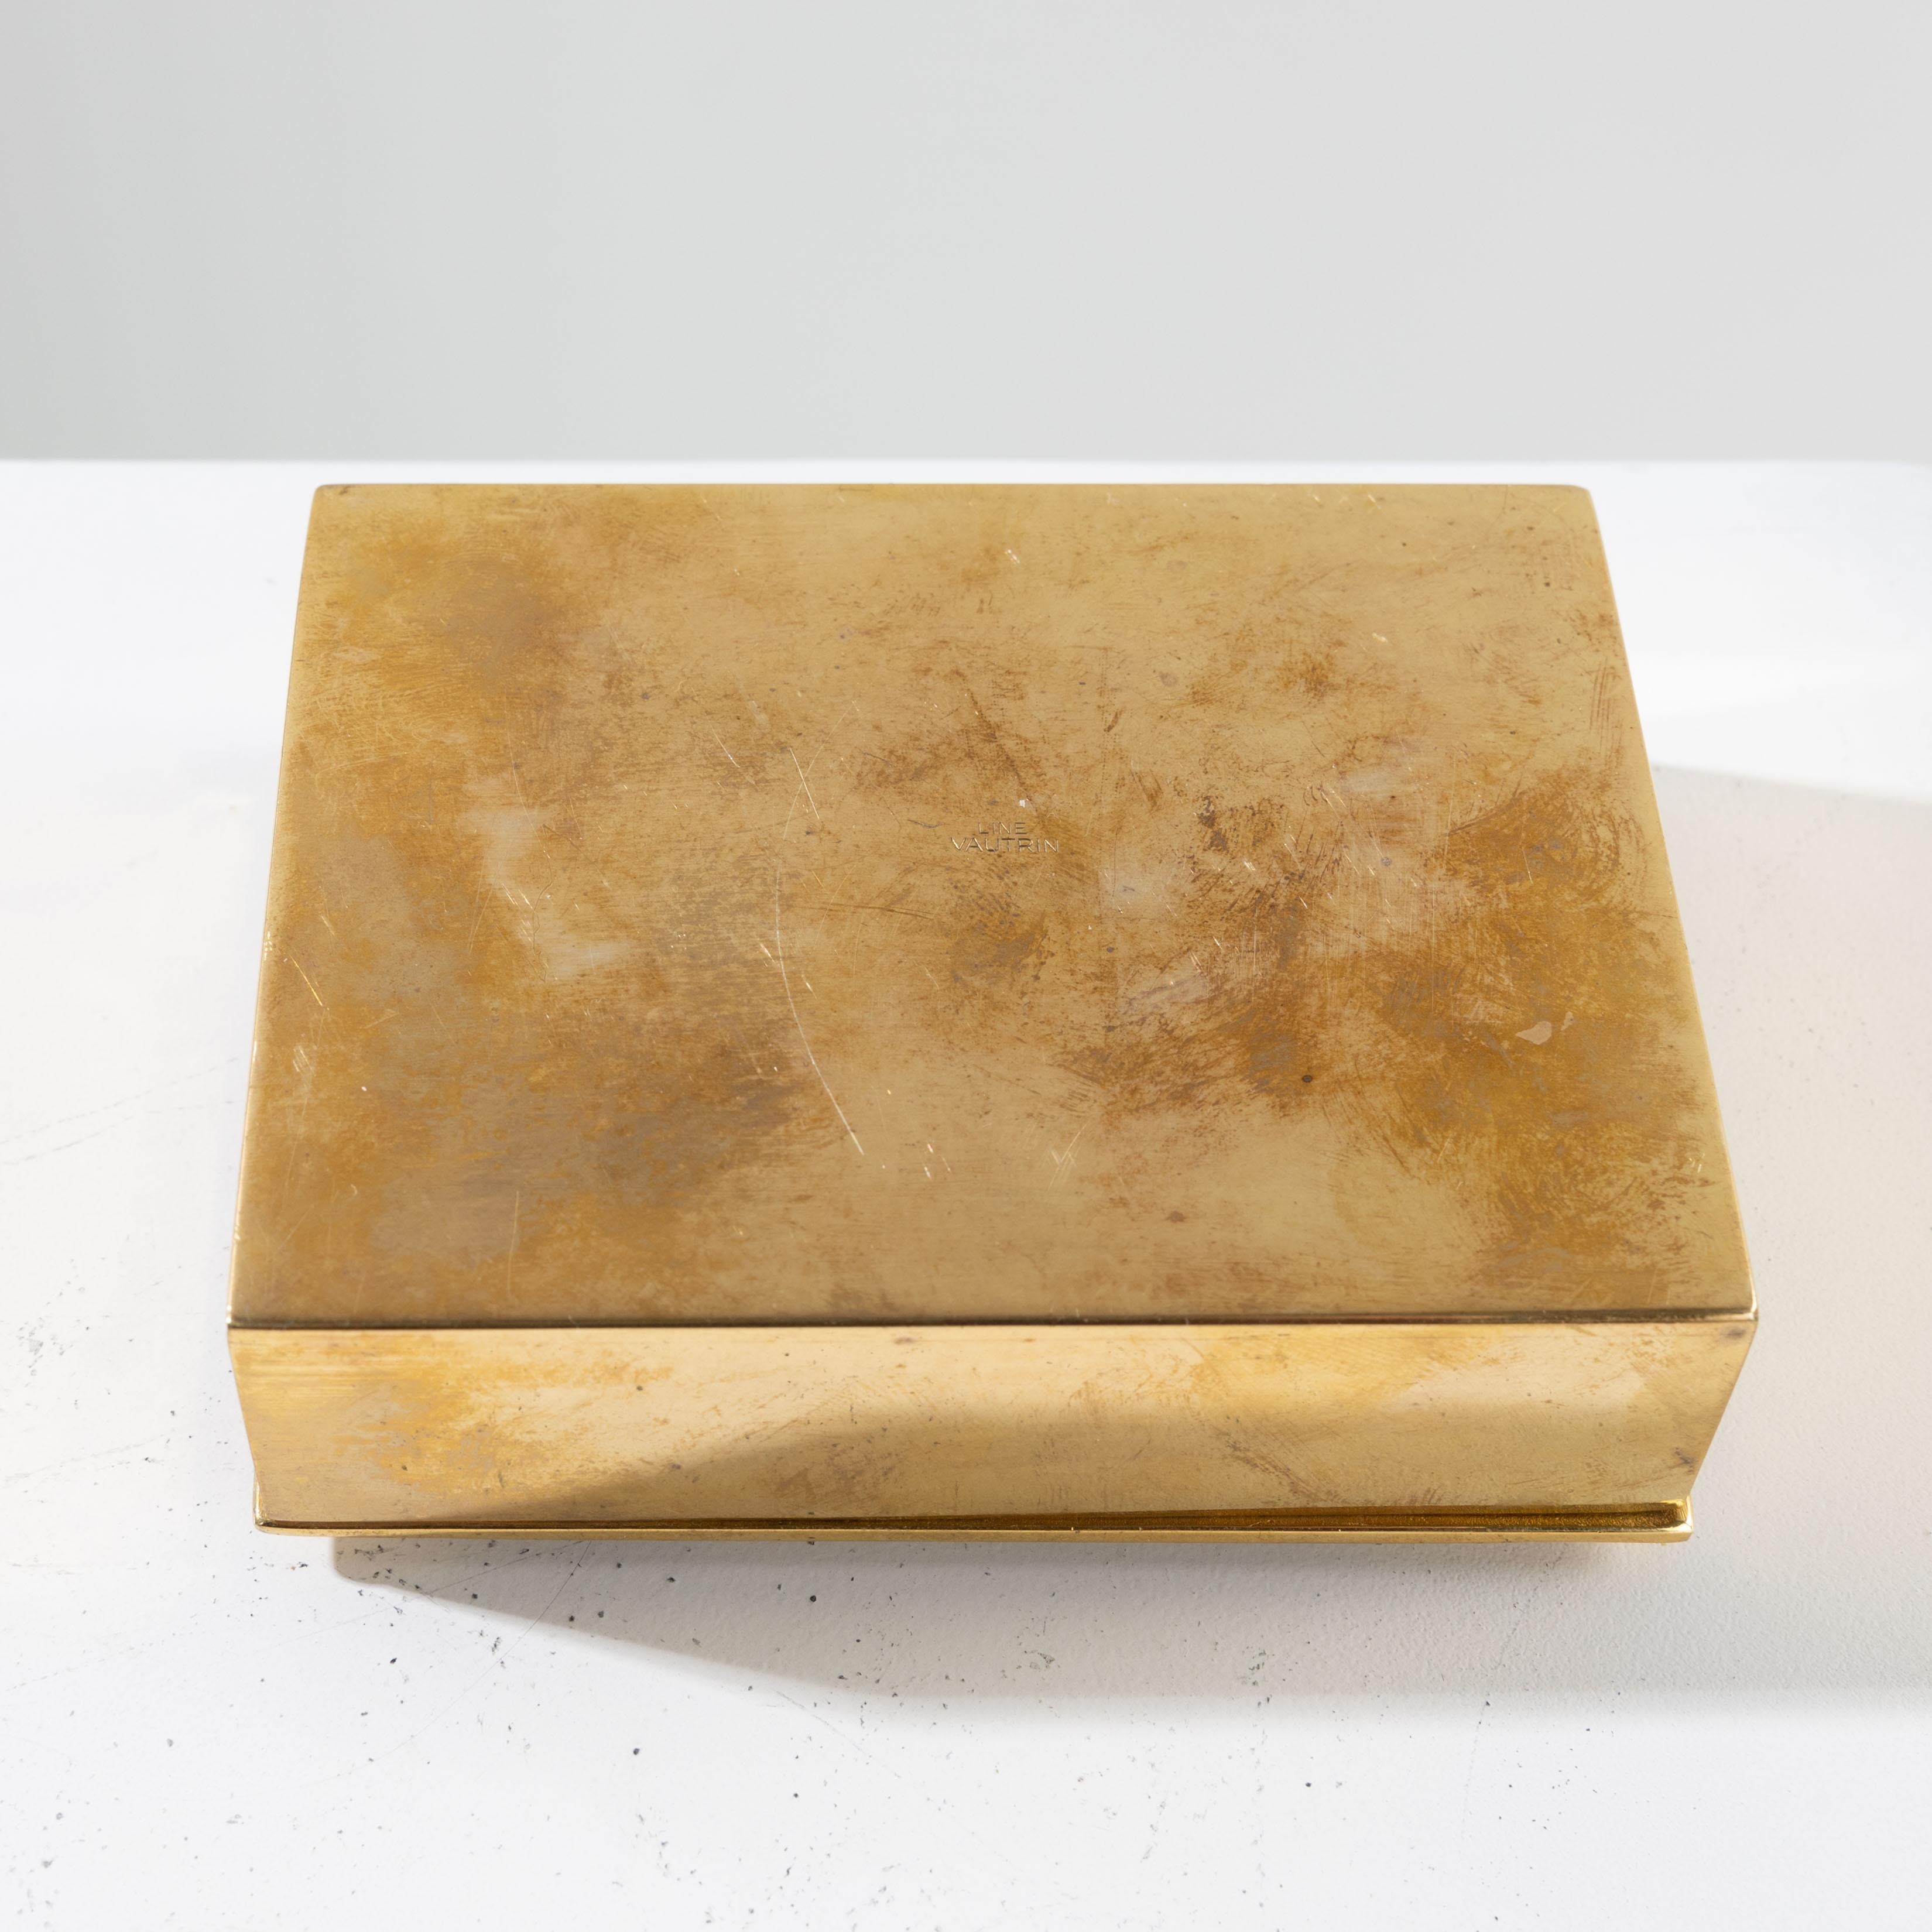 L’étoile a pleuré rose by Line Vautrin - Rare gilded bronze box For Sale 5